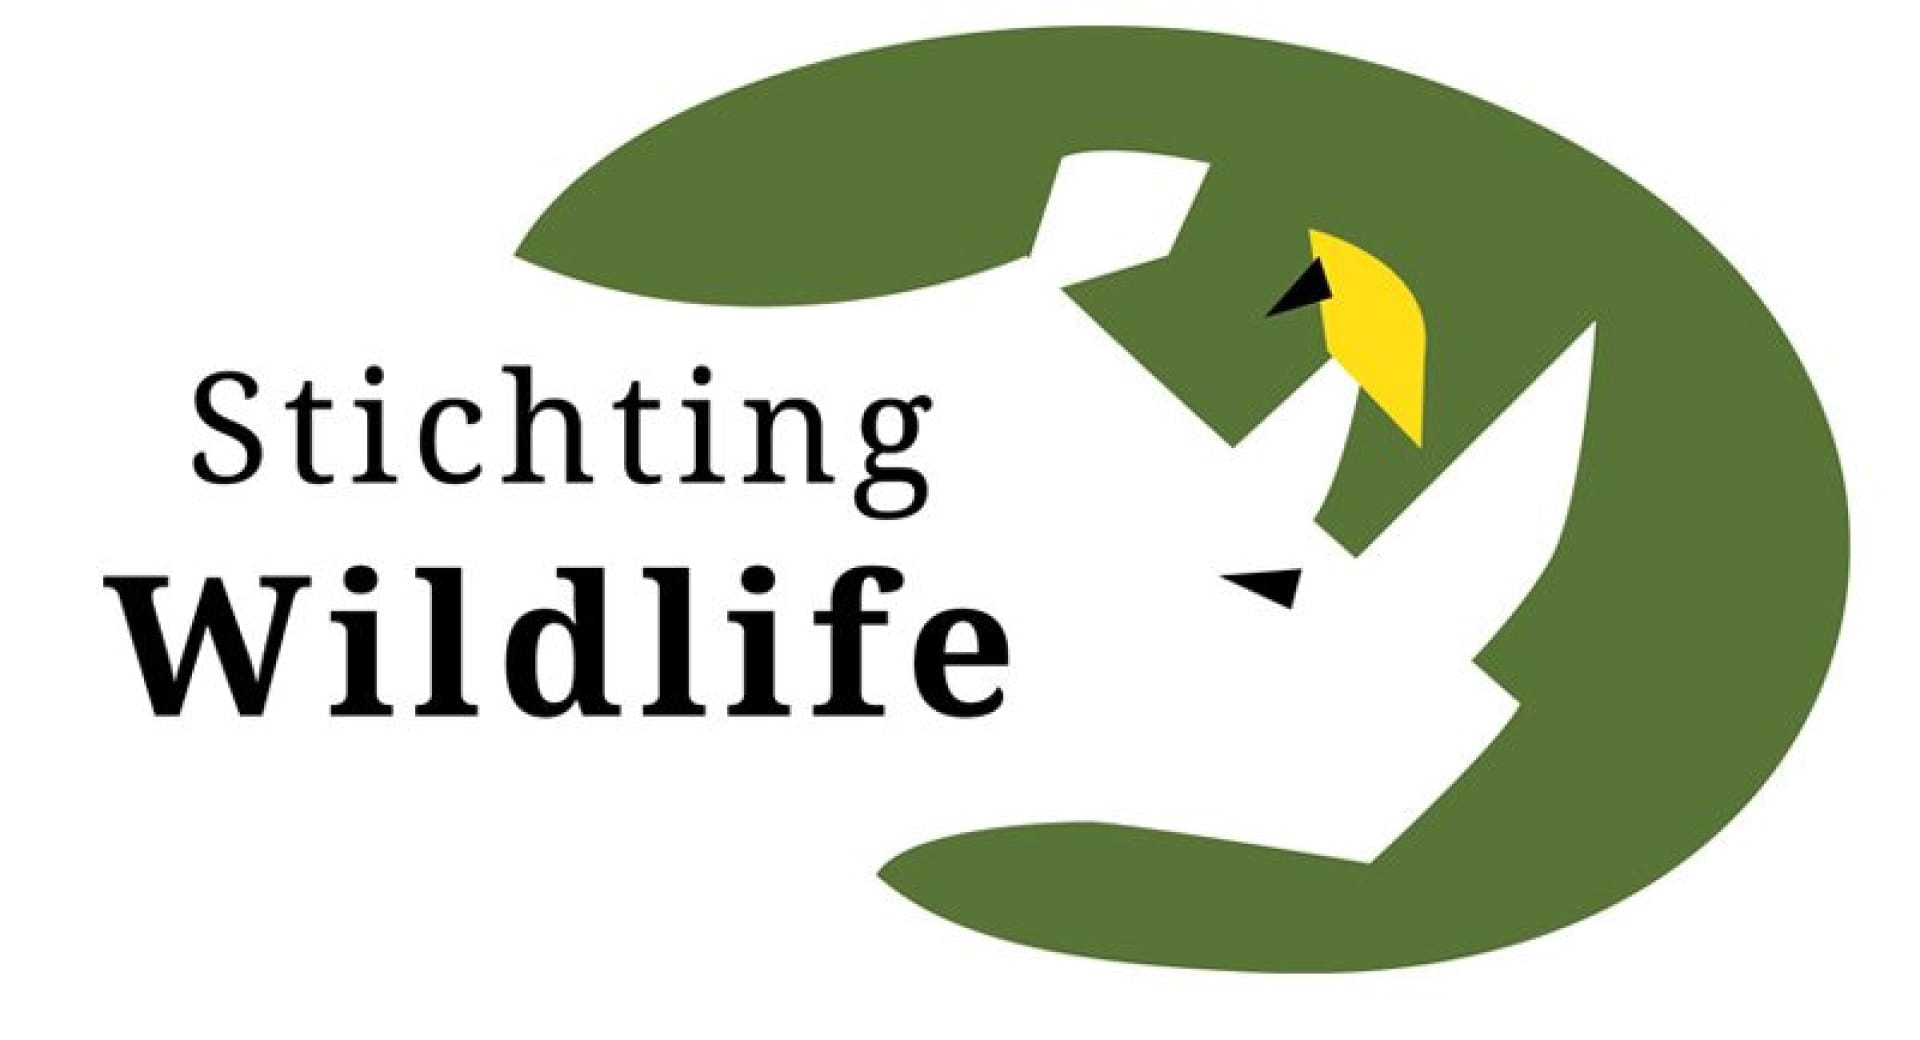 Stichting Wildlife